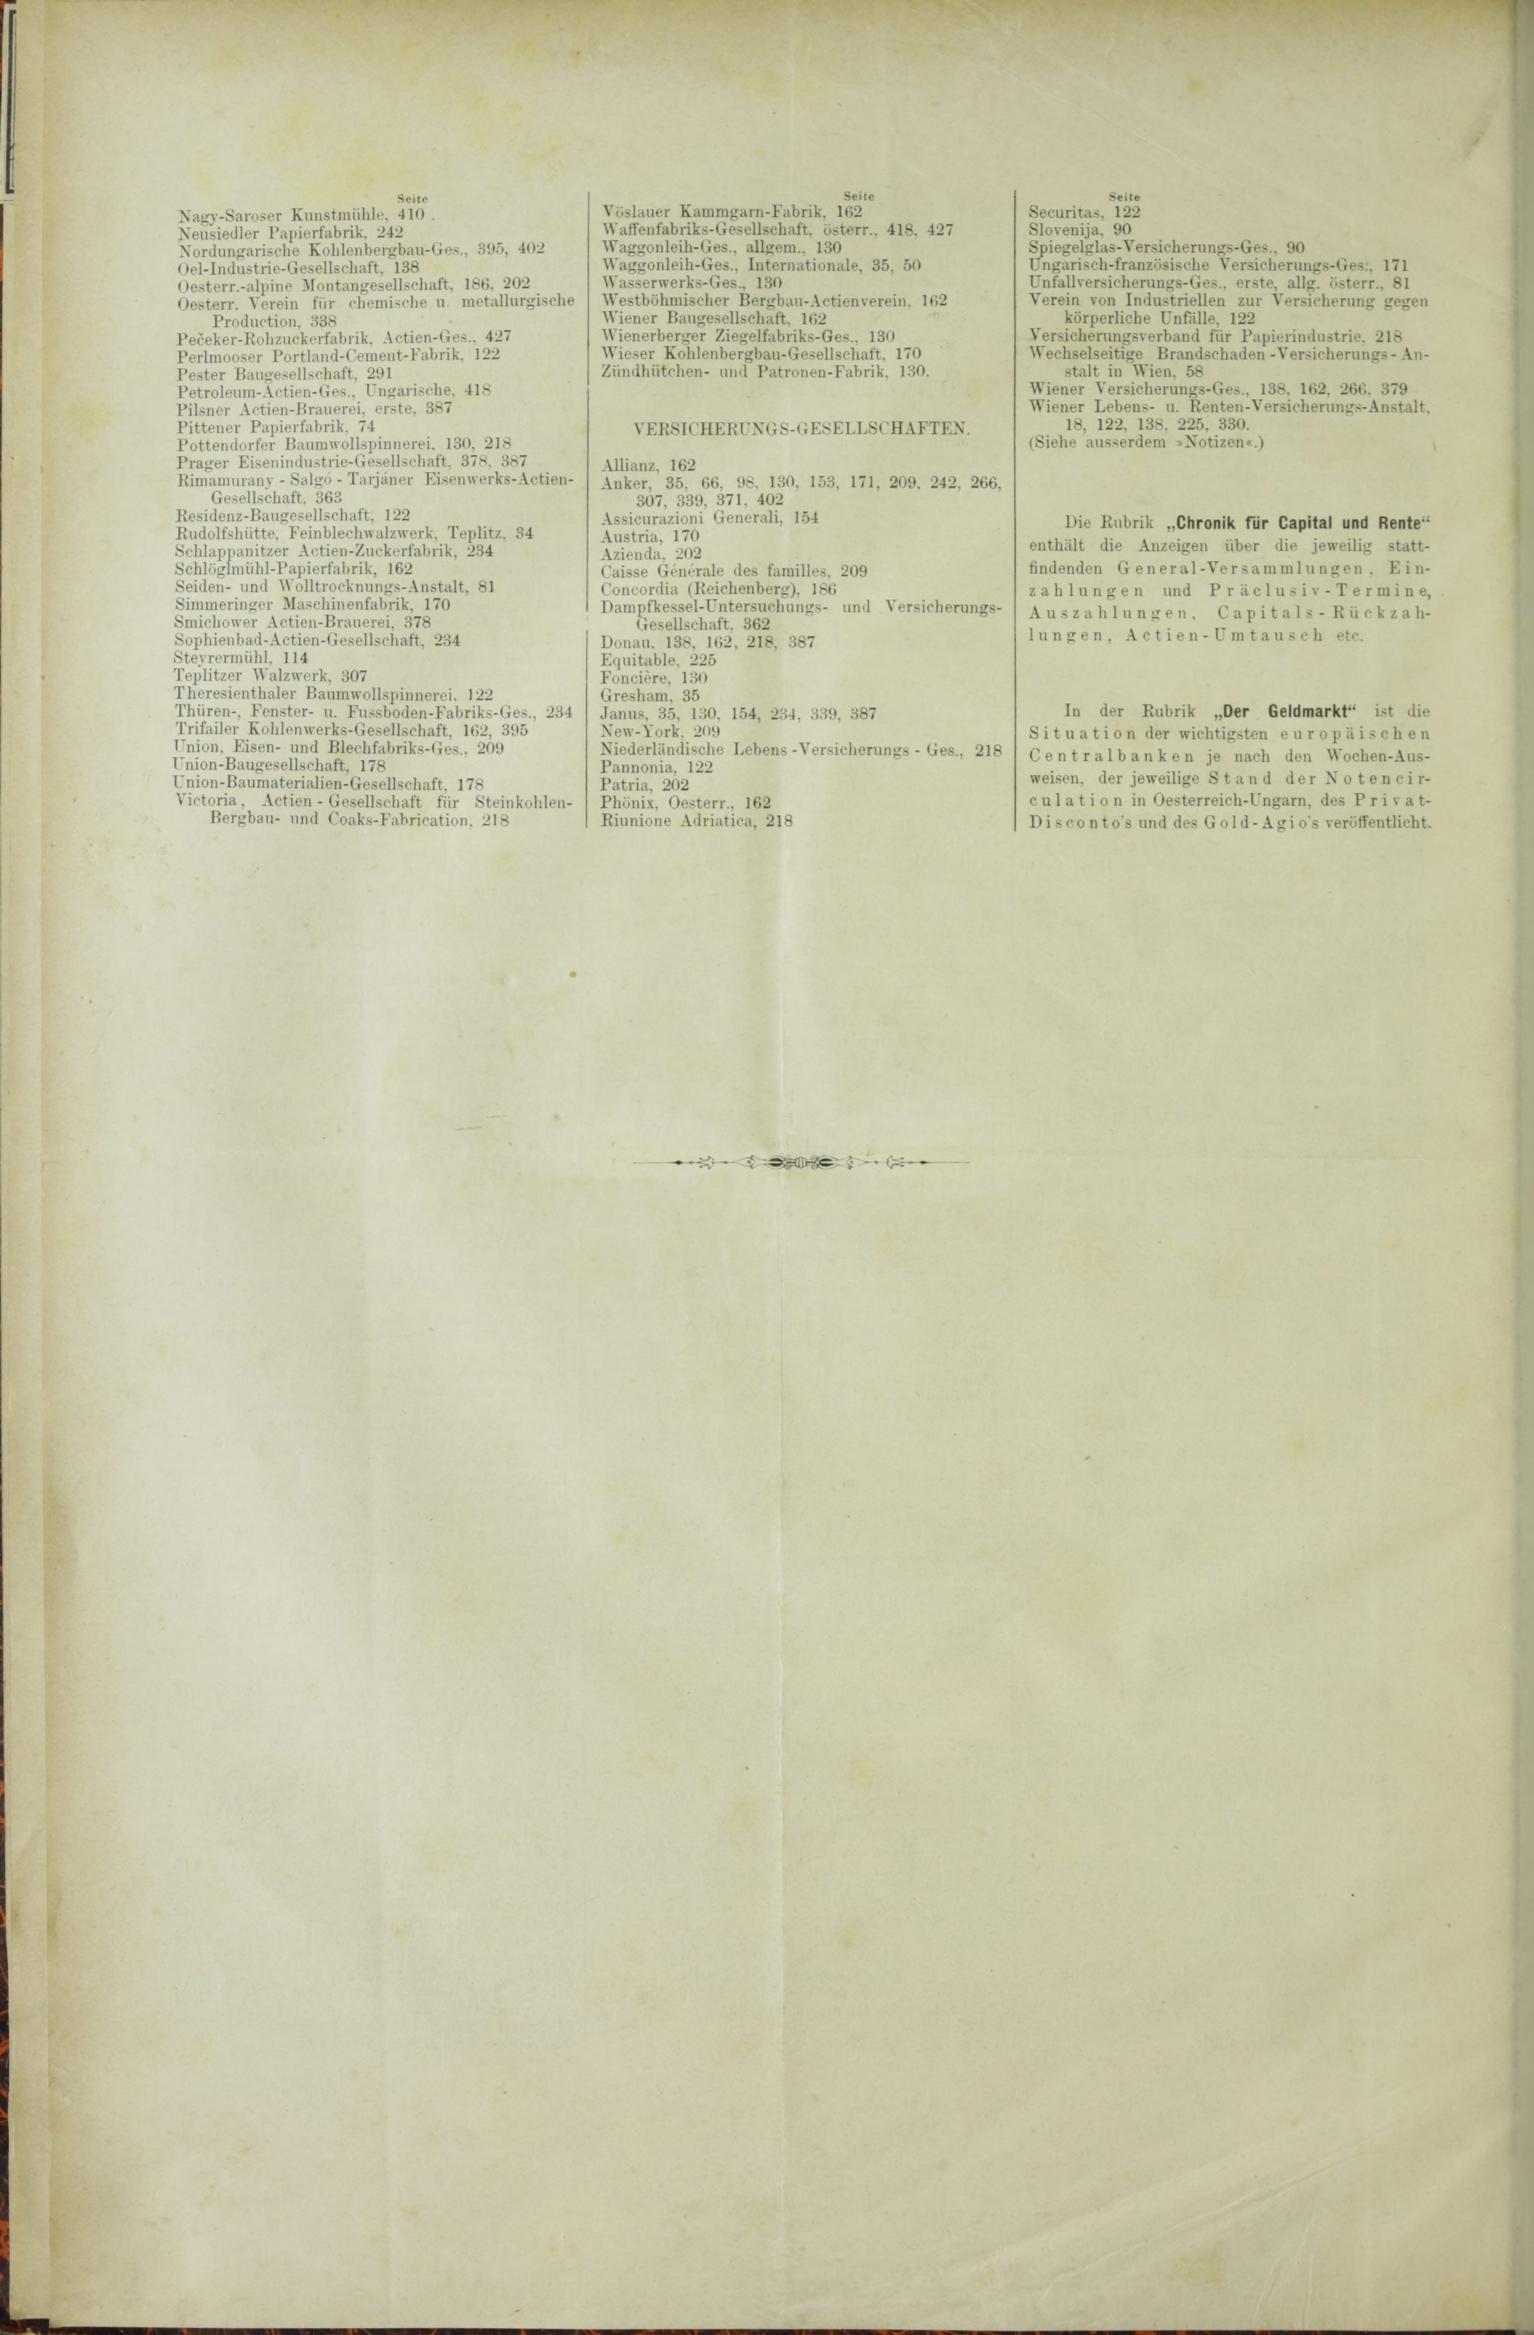 Der Tresor 05.11.1885 - Seite 12